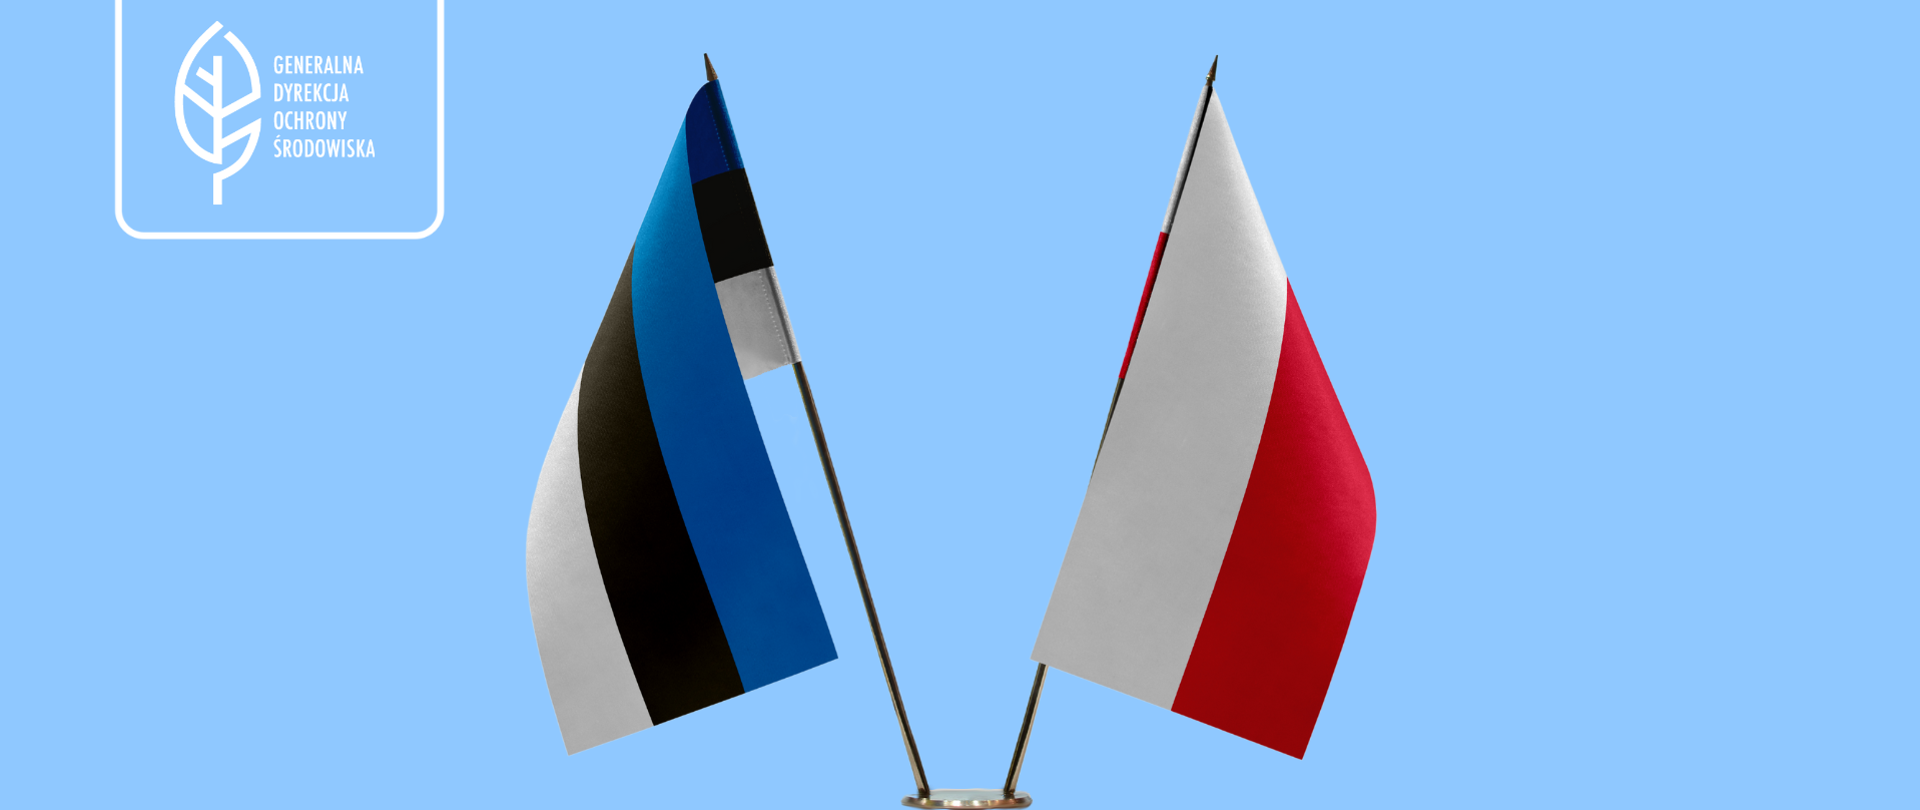 Na niebieskim tle stoją dwie flagi: Estonii i Polski. W lewym górnym rogu logo Generalnej Dyrekcji Ochrony Środowiska (biały liść). 